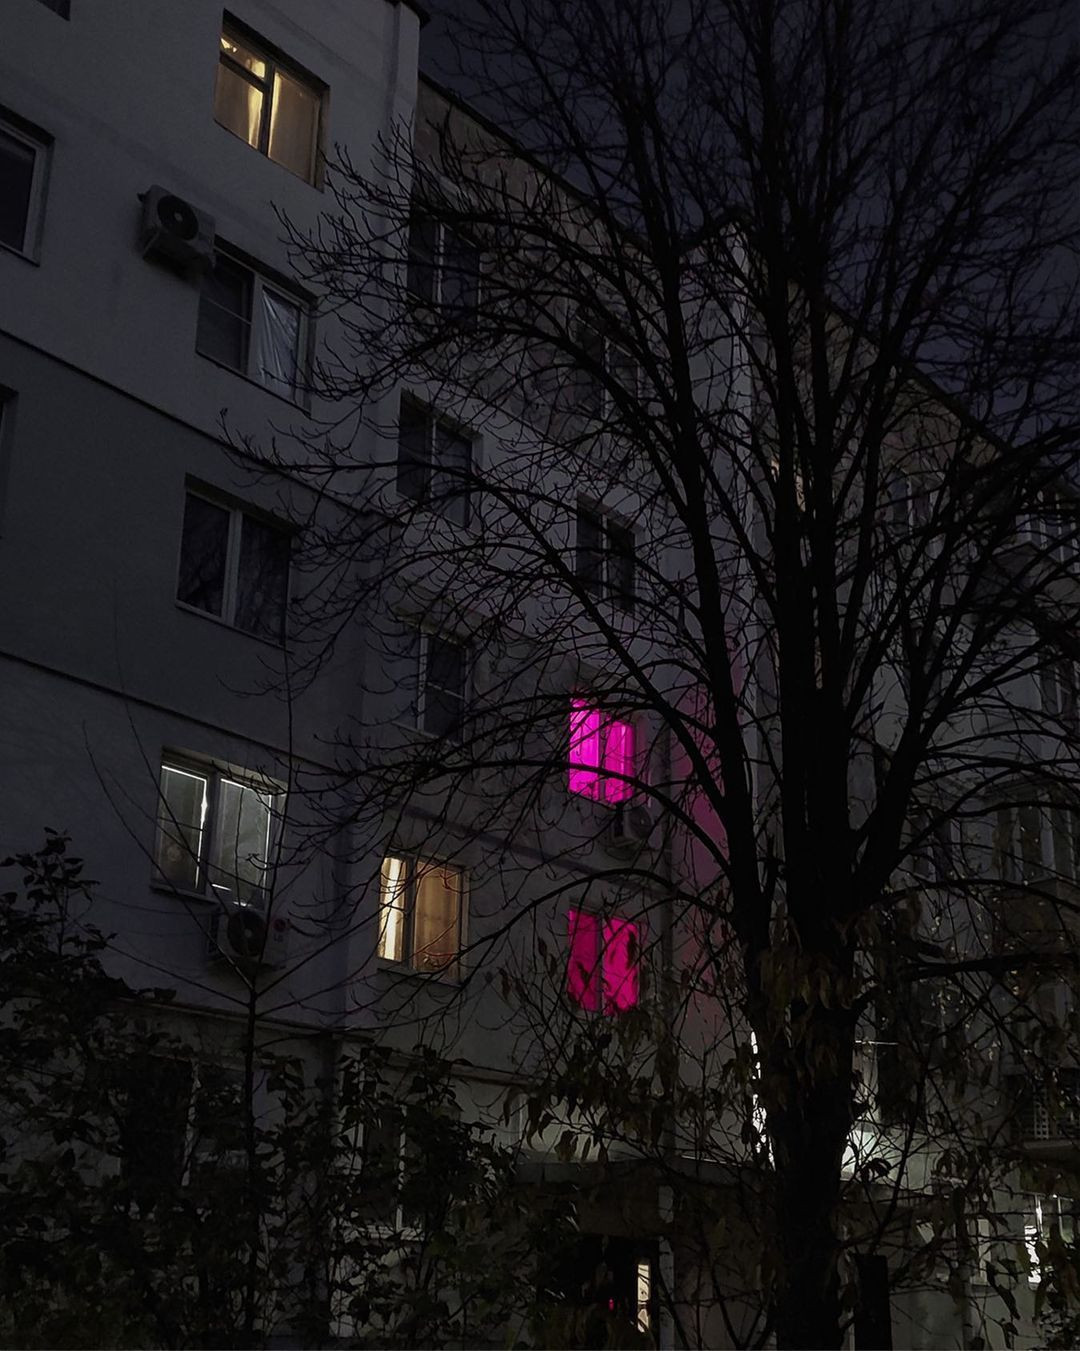 Rusya'da apartman dairelerindeki pembe ışıkların sırrı çözüldü - Sayfa 4